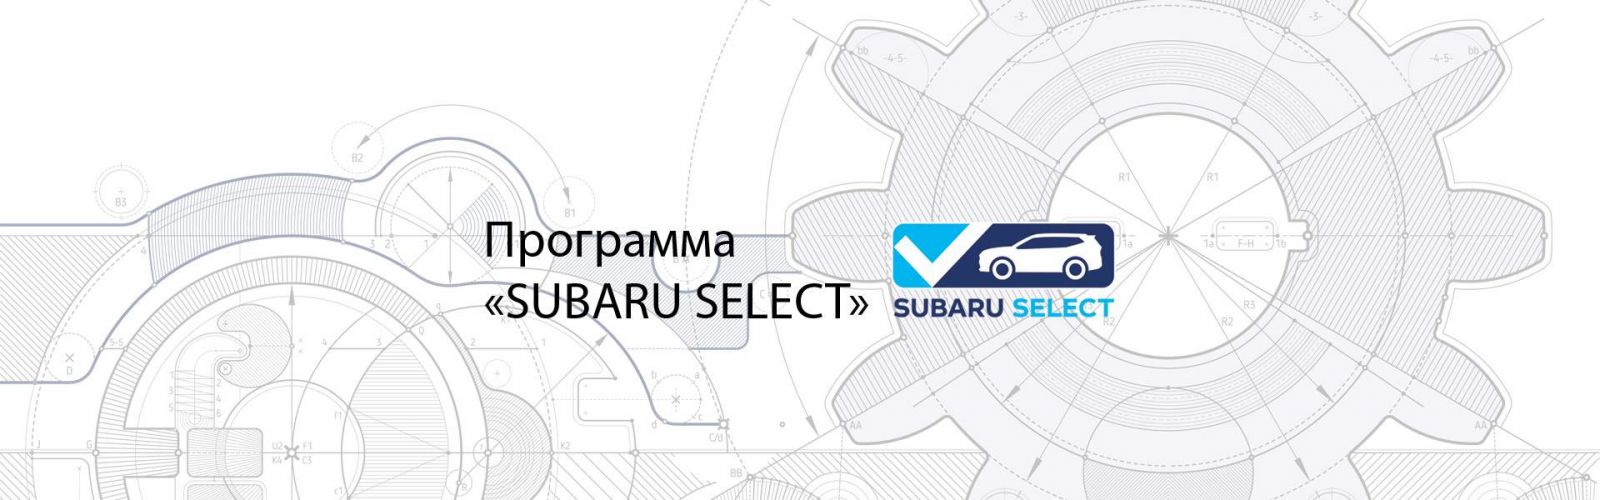 Subaru Certified Used Vehicle Program (CPO).